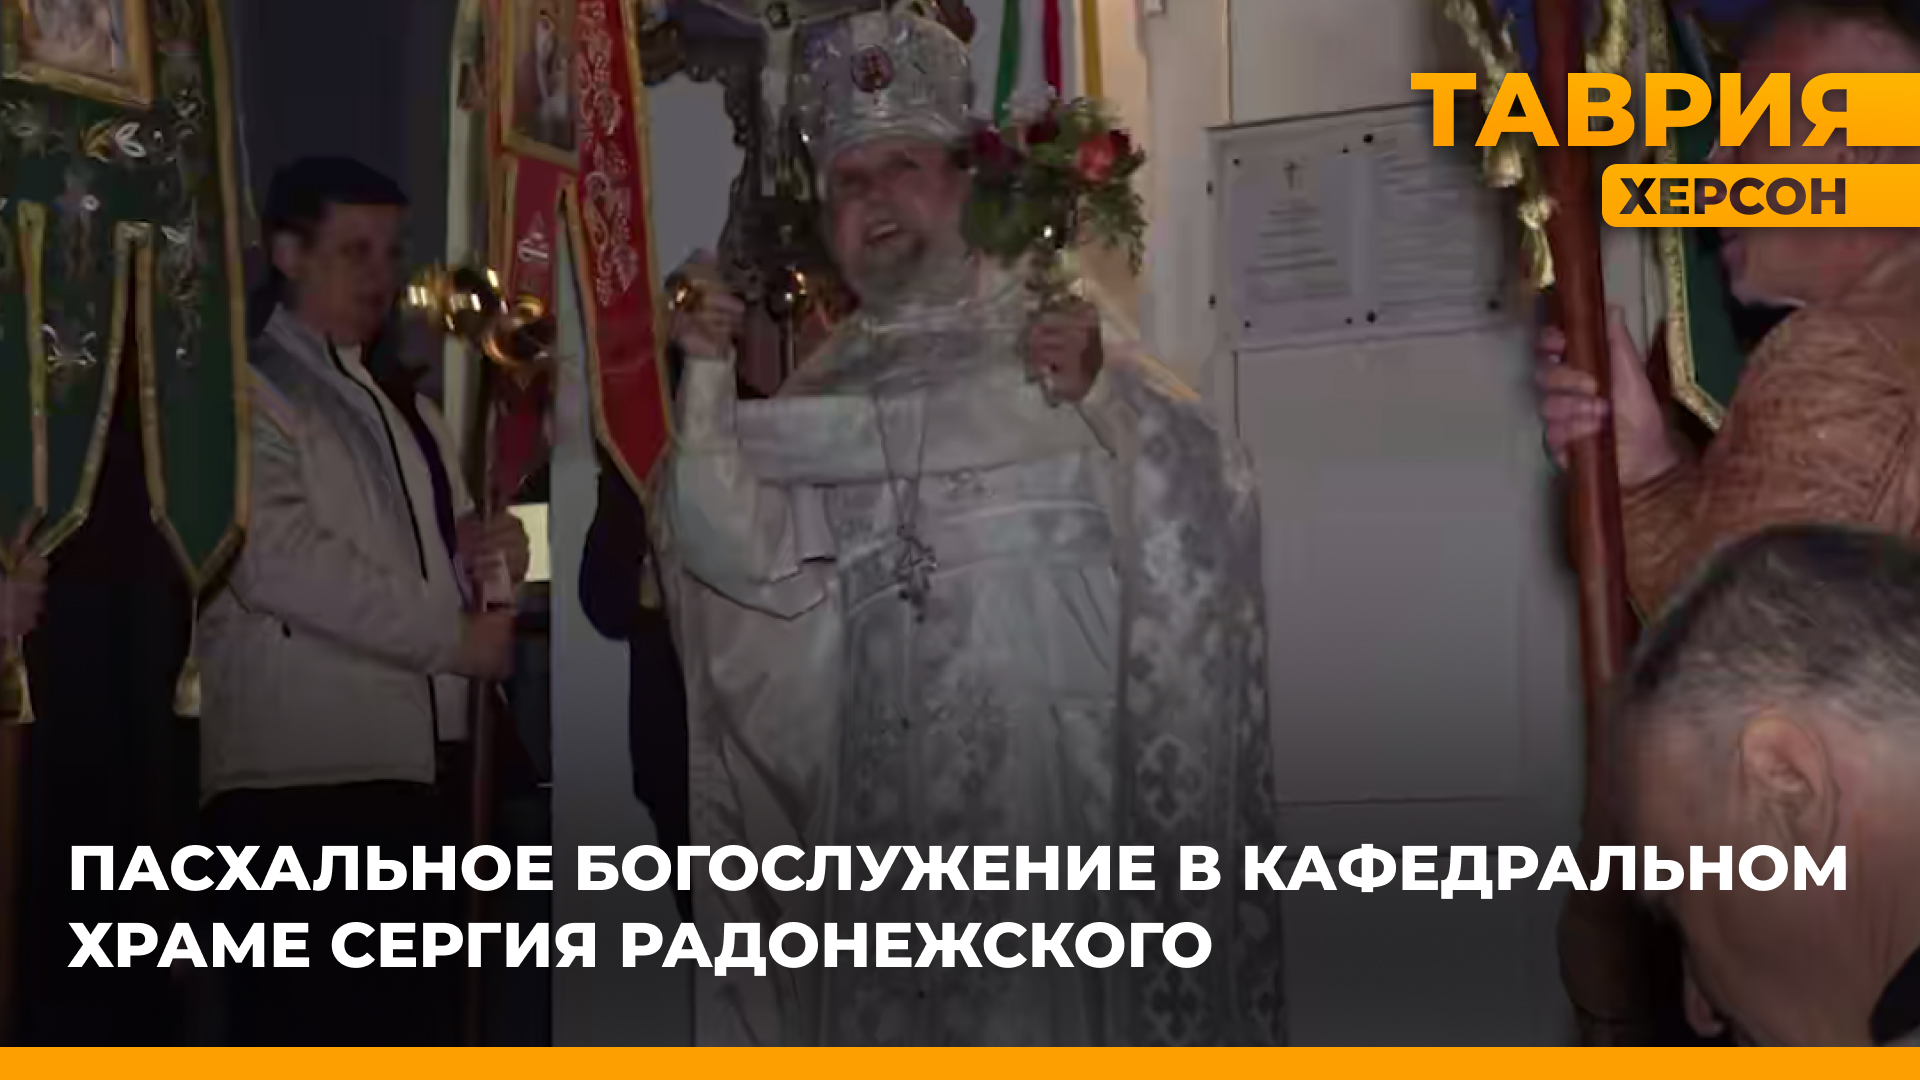 В Скадовском кафедральном храме Сергия Радонежского состоялось пасхальное богослужение